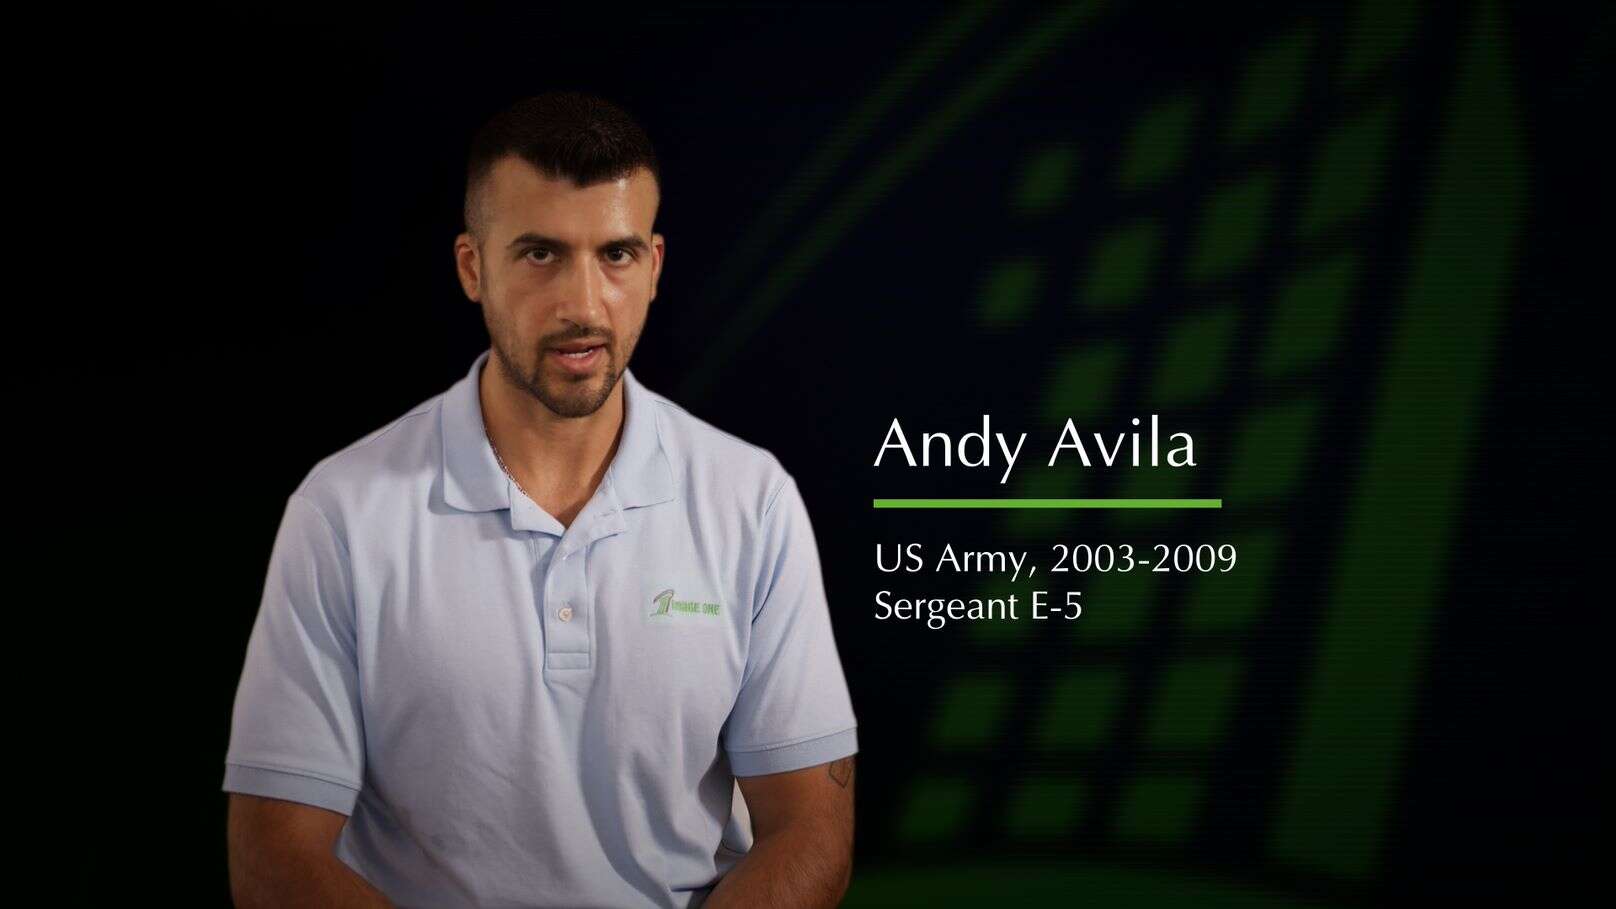 Andy Avila Veterans image one